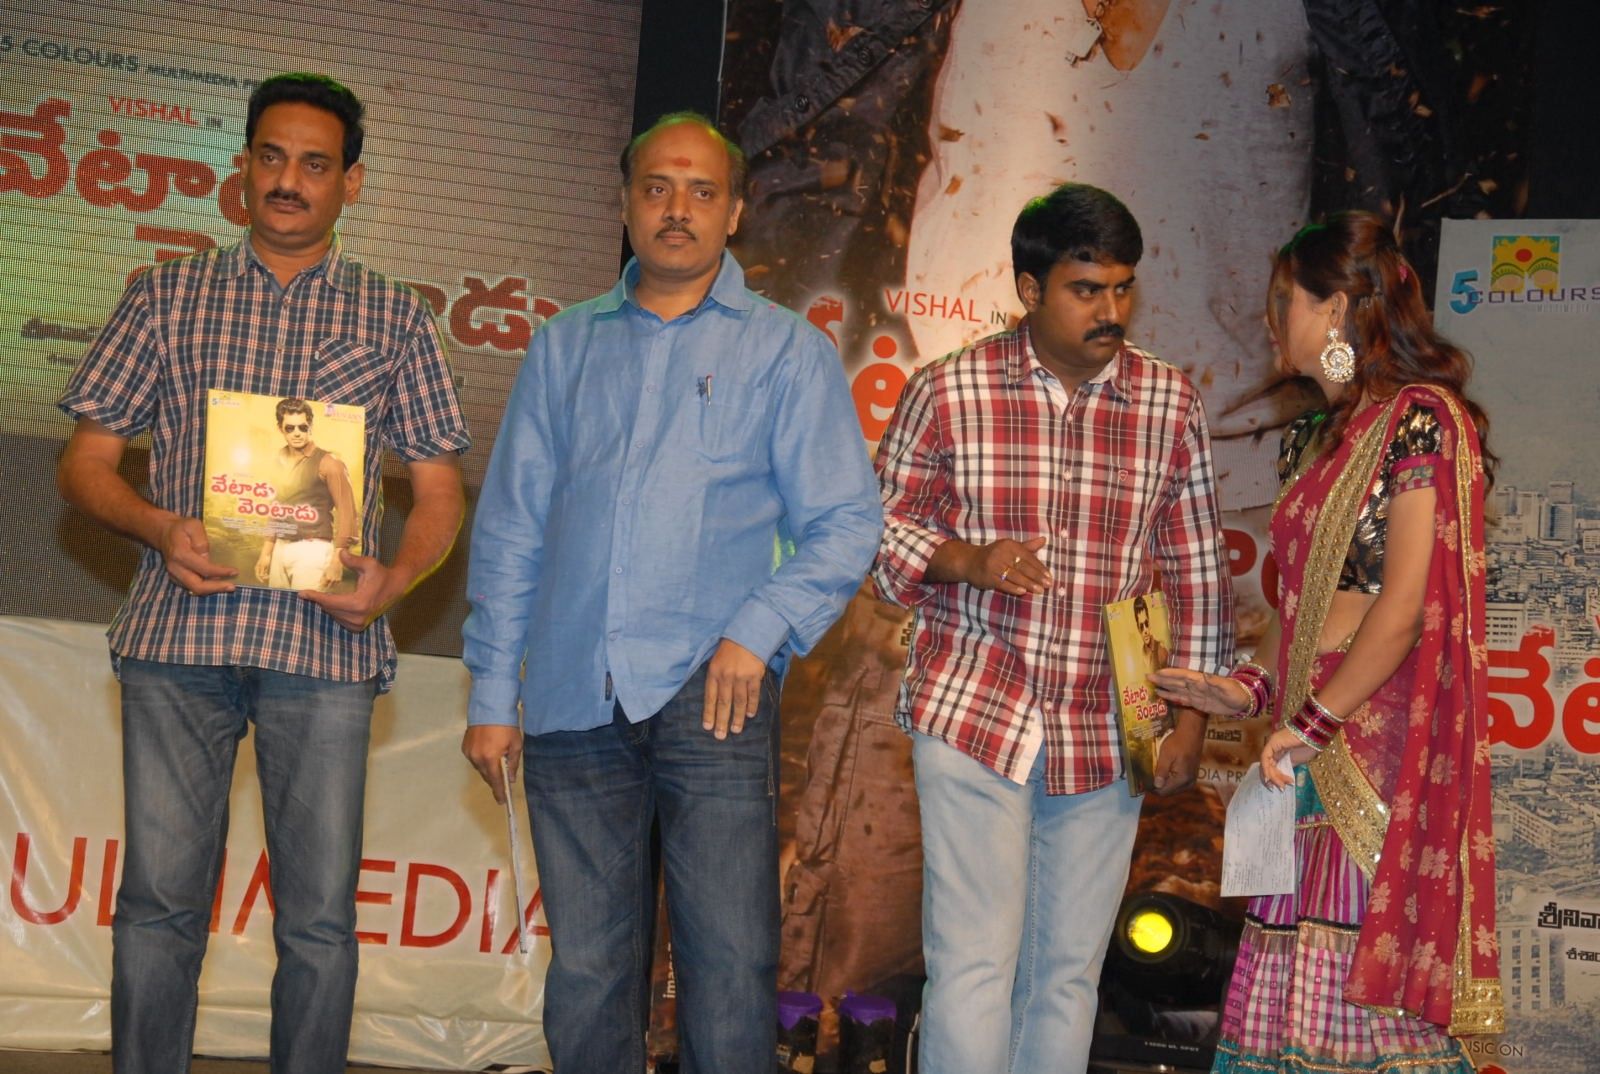 Vetadu Ventadu Movie Audio Launch Pictures | Picture 335355